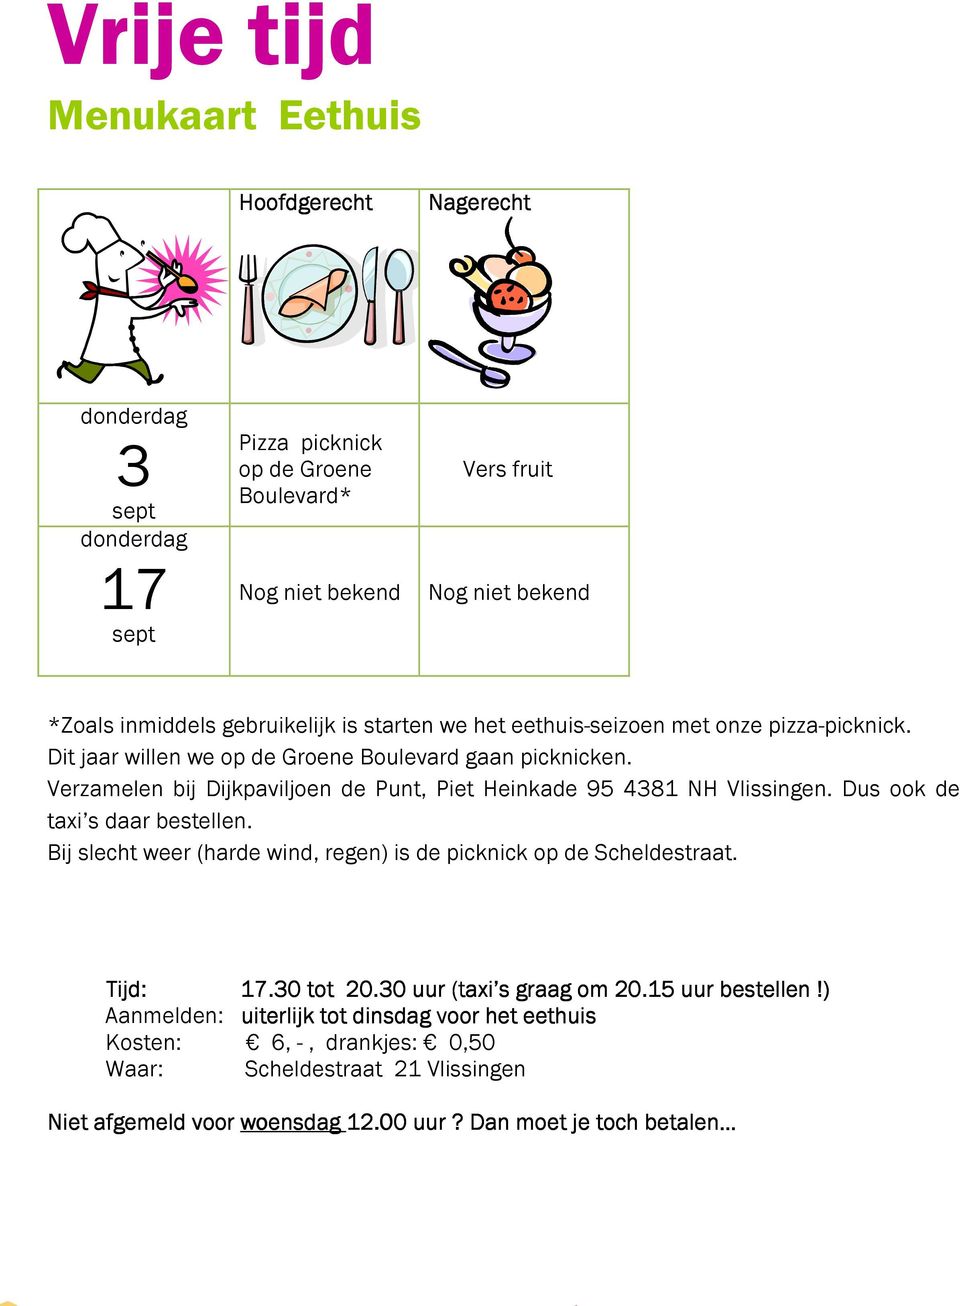 Verzamelen bij Dijkpaviljoen de Punt, Piet Heinkade 95 4381 NH Vlissingen. Dus ook de taxi s daar bestellen. Bij slecht weer (harde wind, regen) is de picknick op de Scheldestraat.